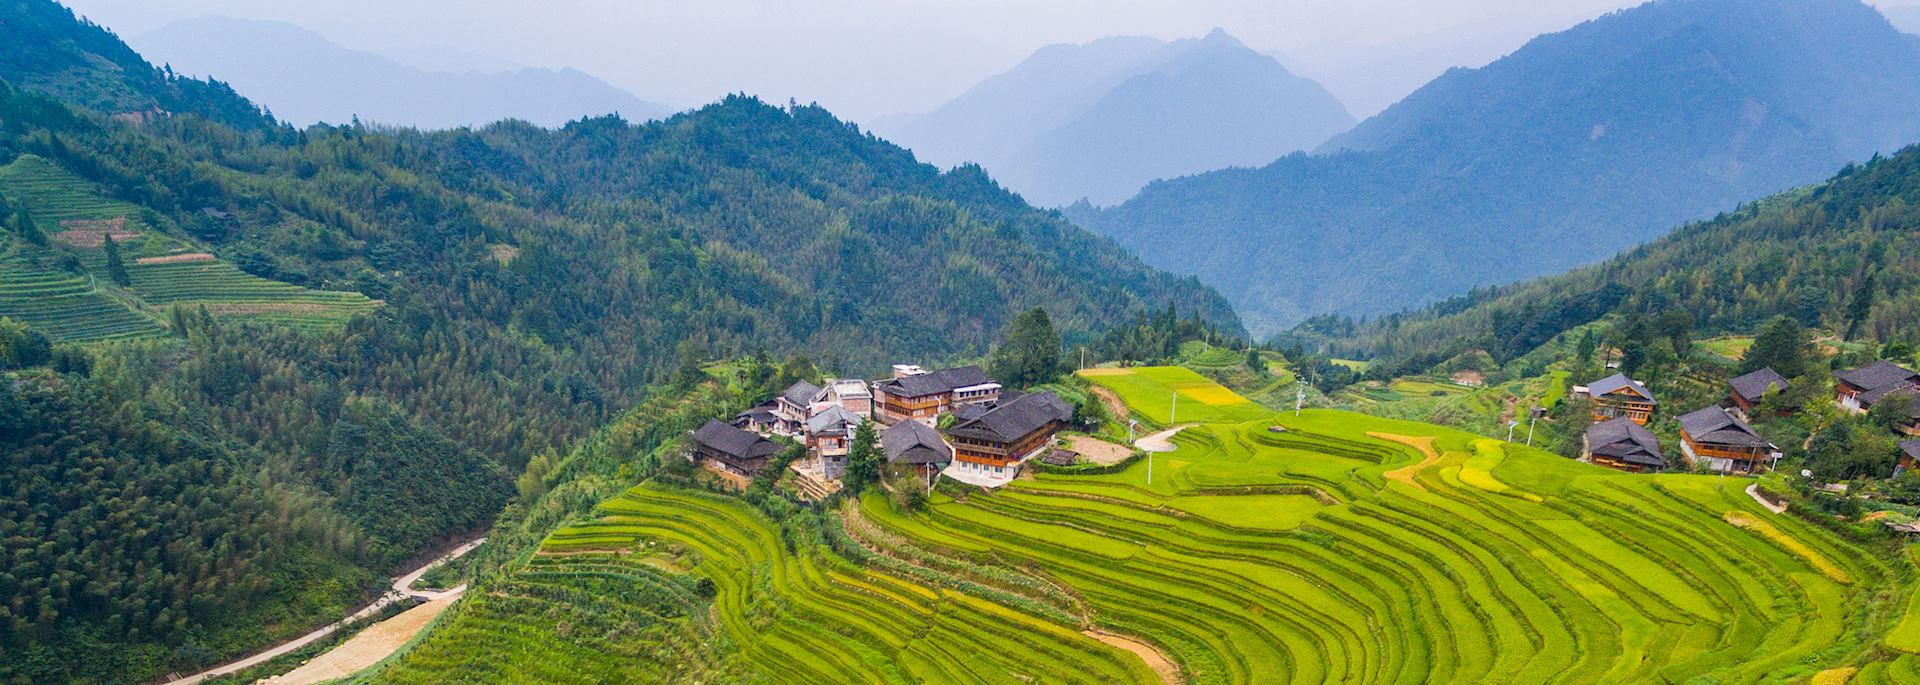 Terraced fields in Longji